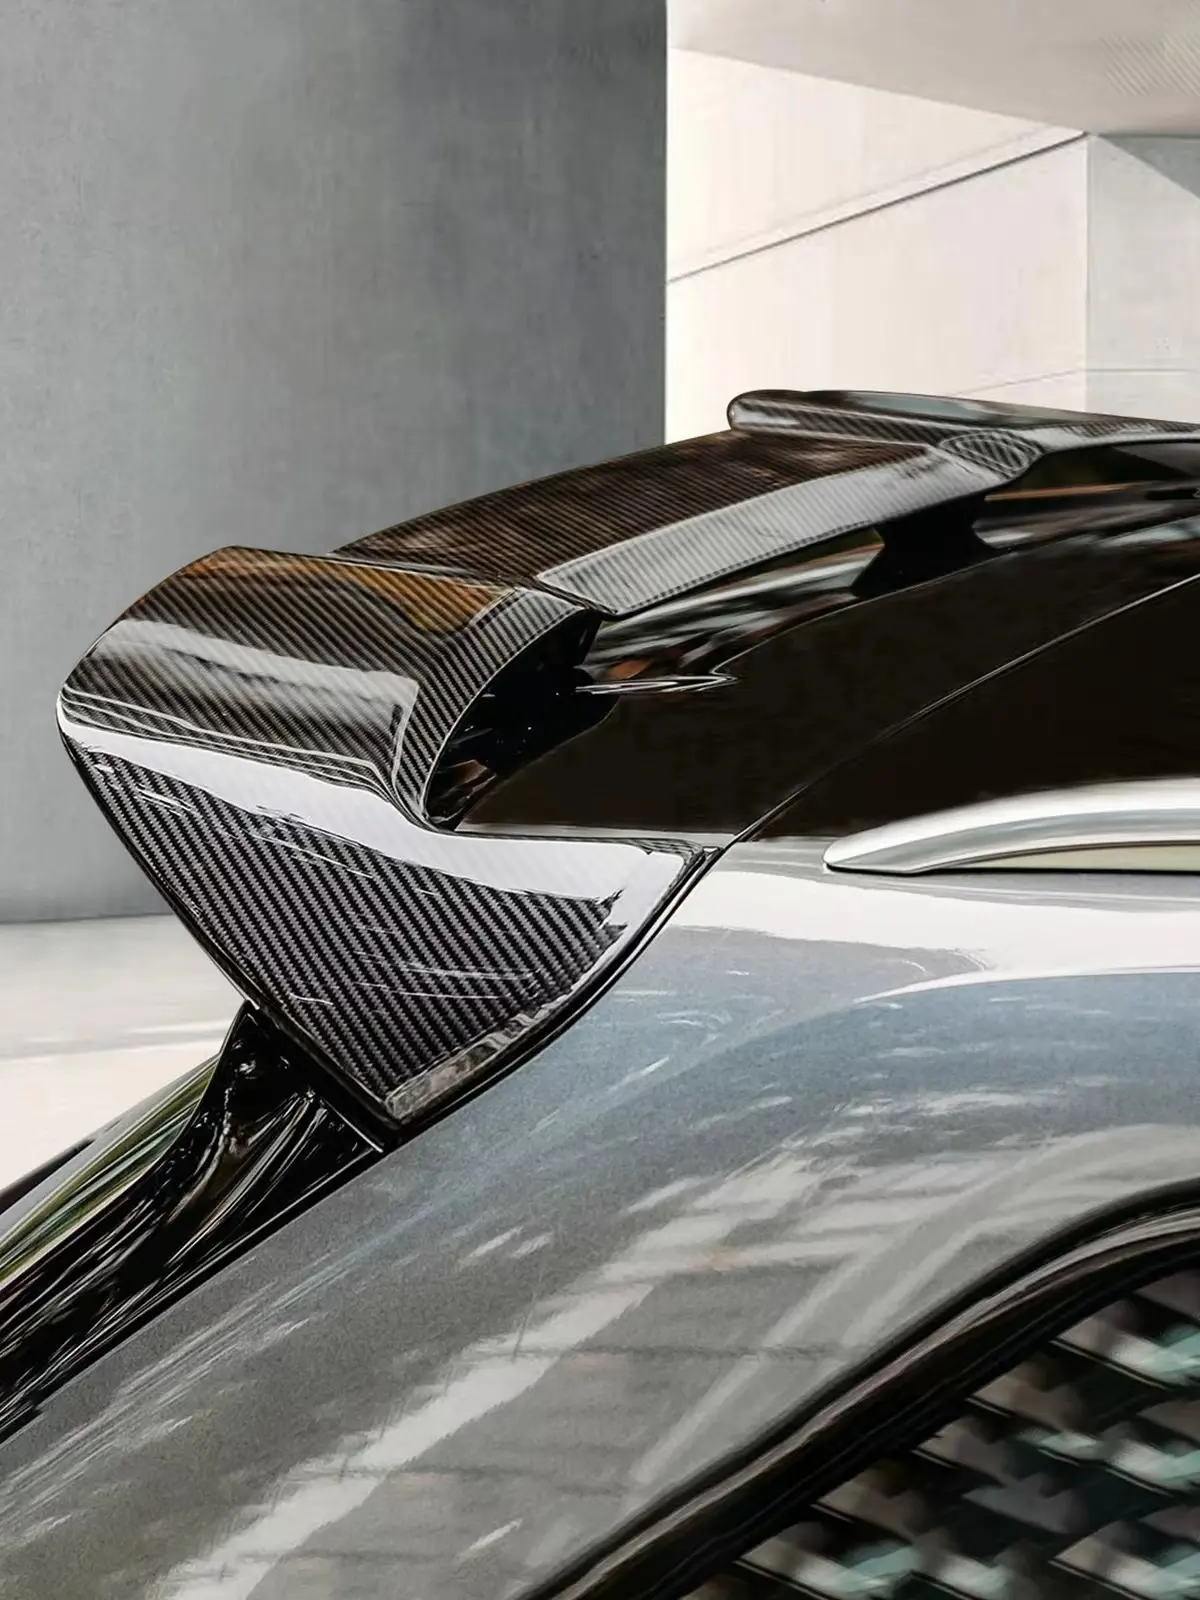 Spoiler de fibra de carbono personalizado para carros com produtos modificados personalizados